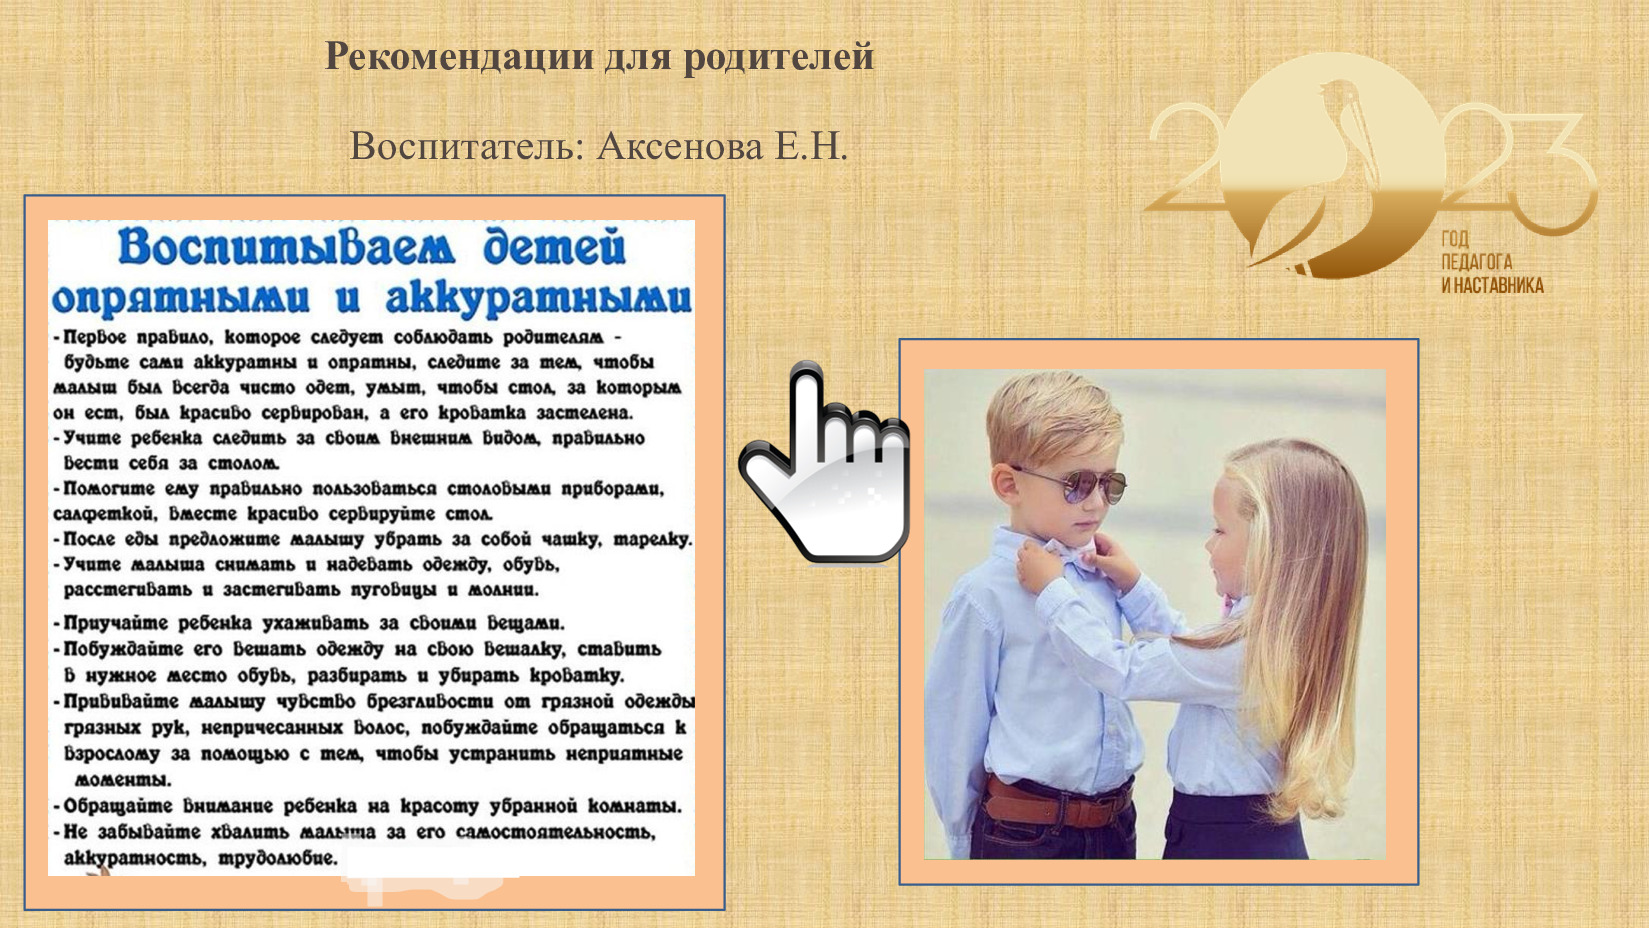 Рекомендации для родителей Аксенова Е.Н 